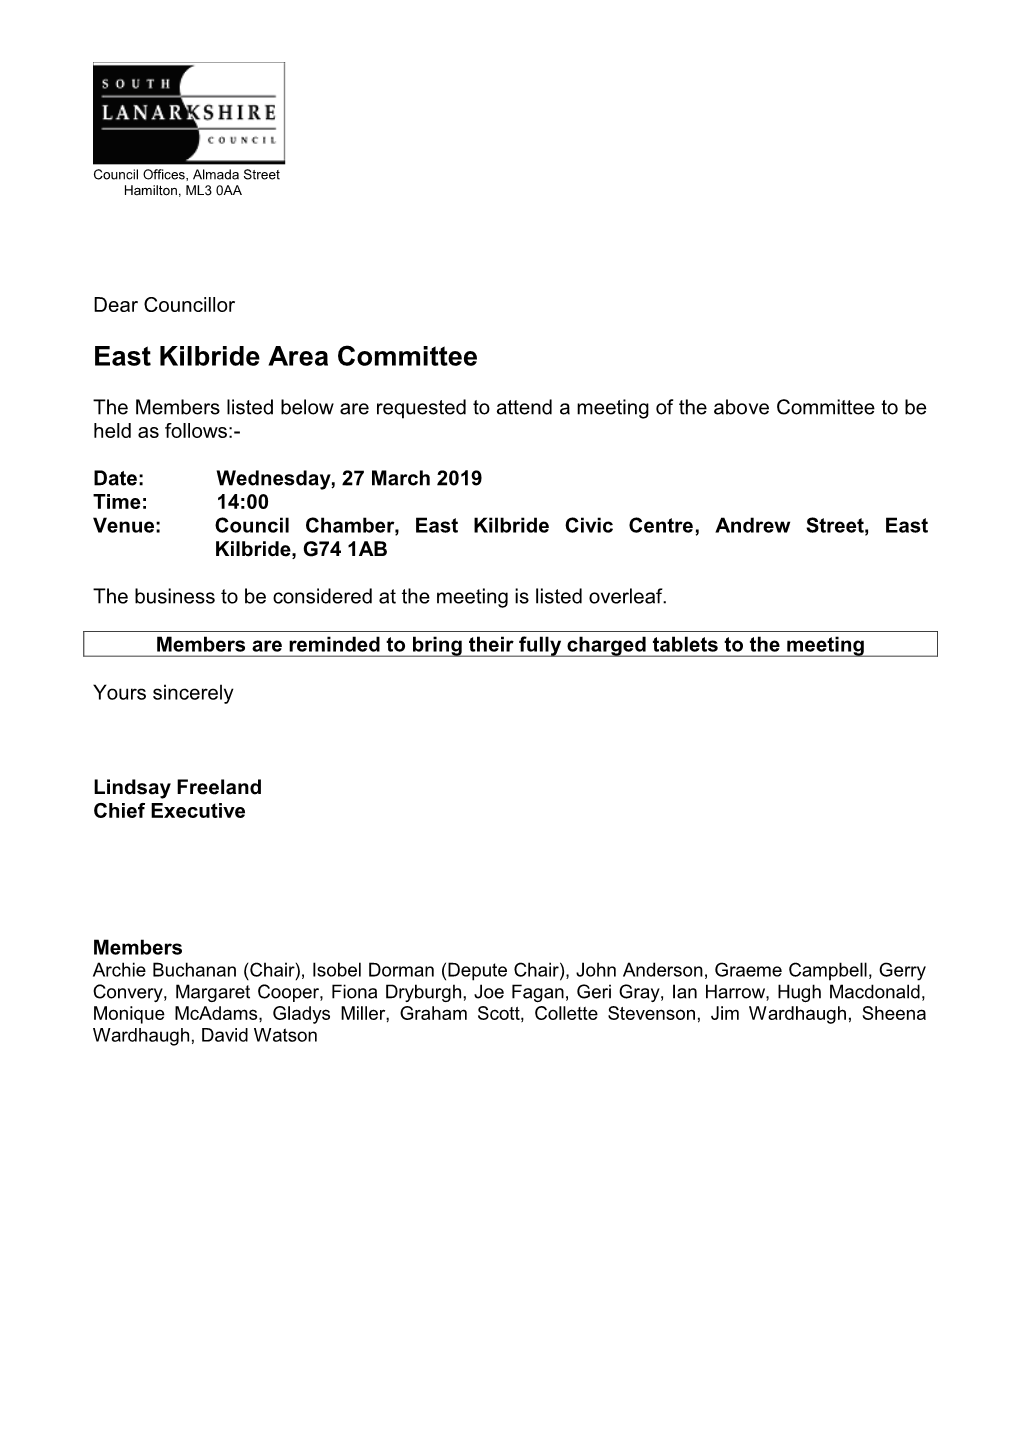 East Kilbride Area Committee